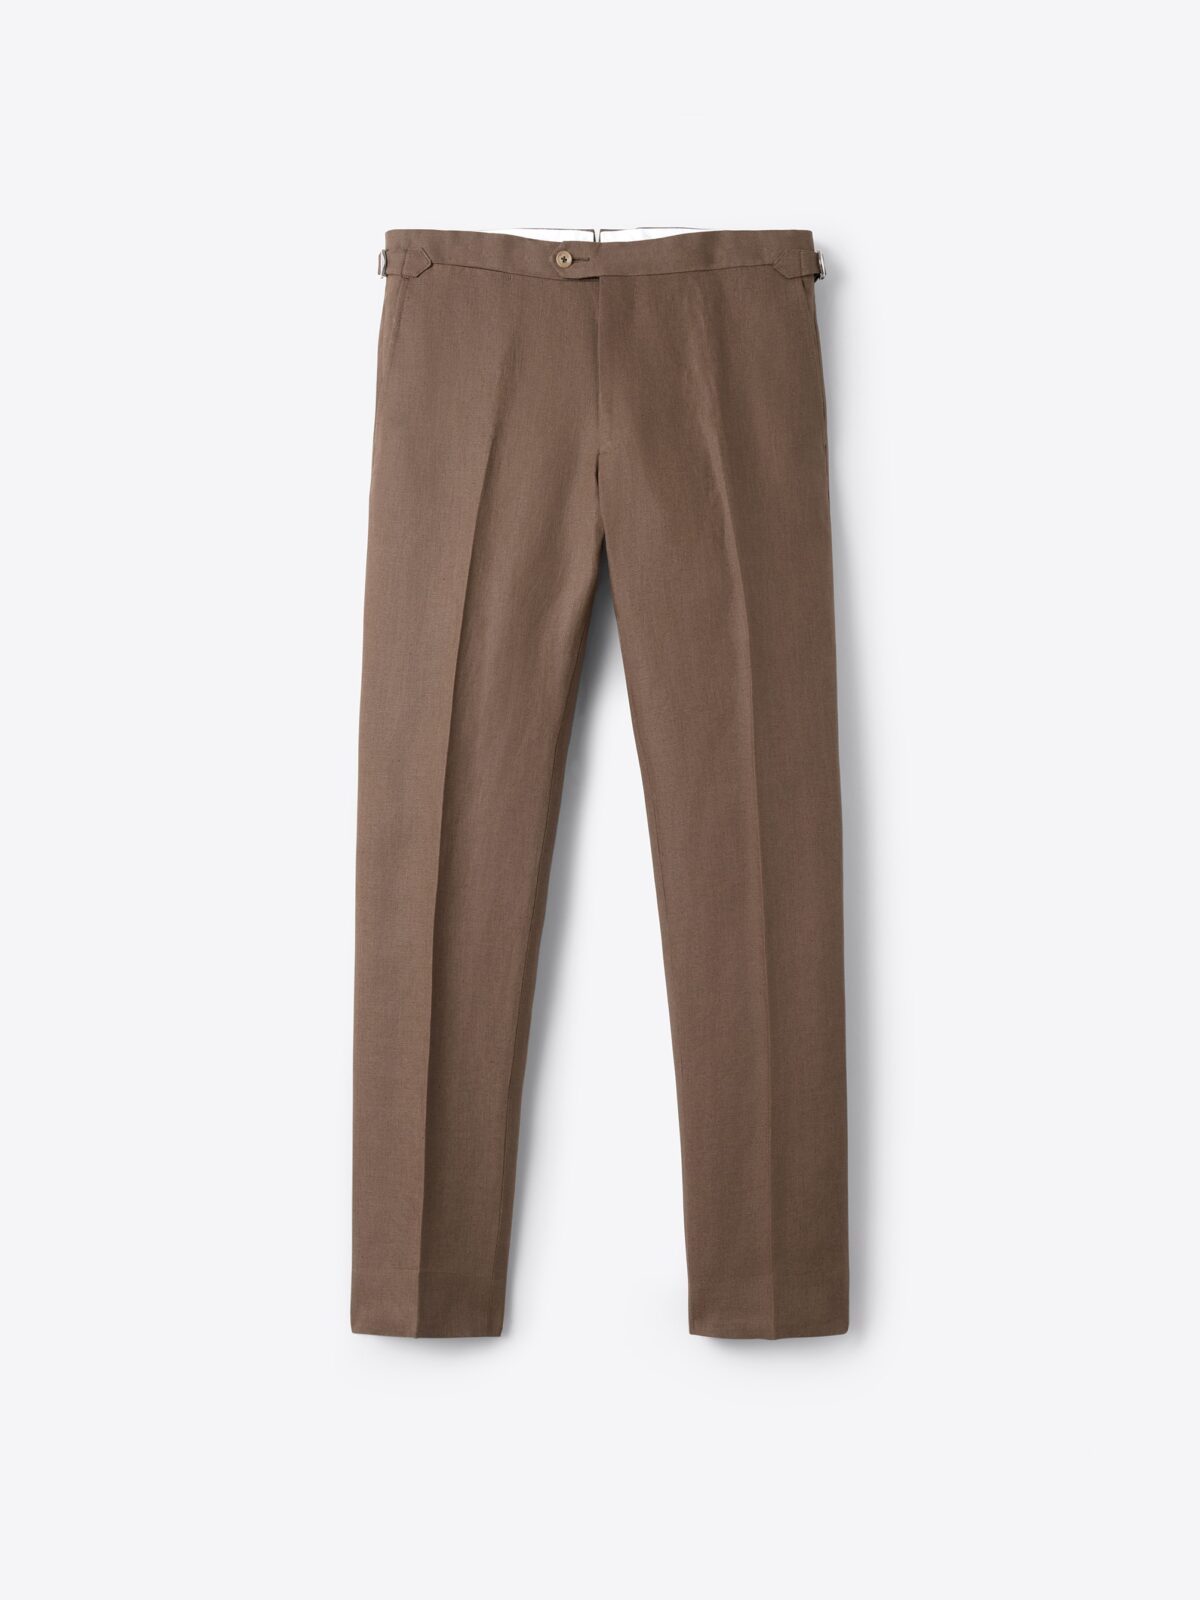 COCOS men's linen pants | Manufacture de Lin